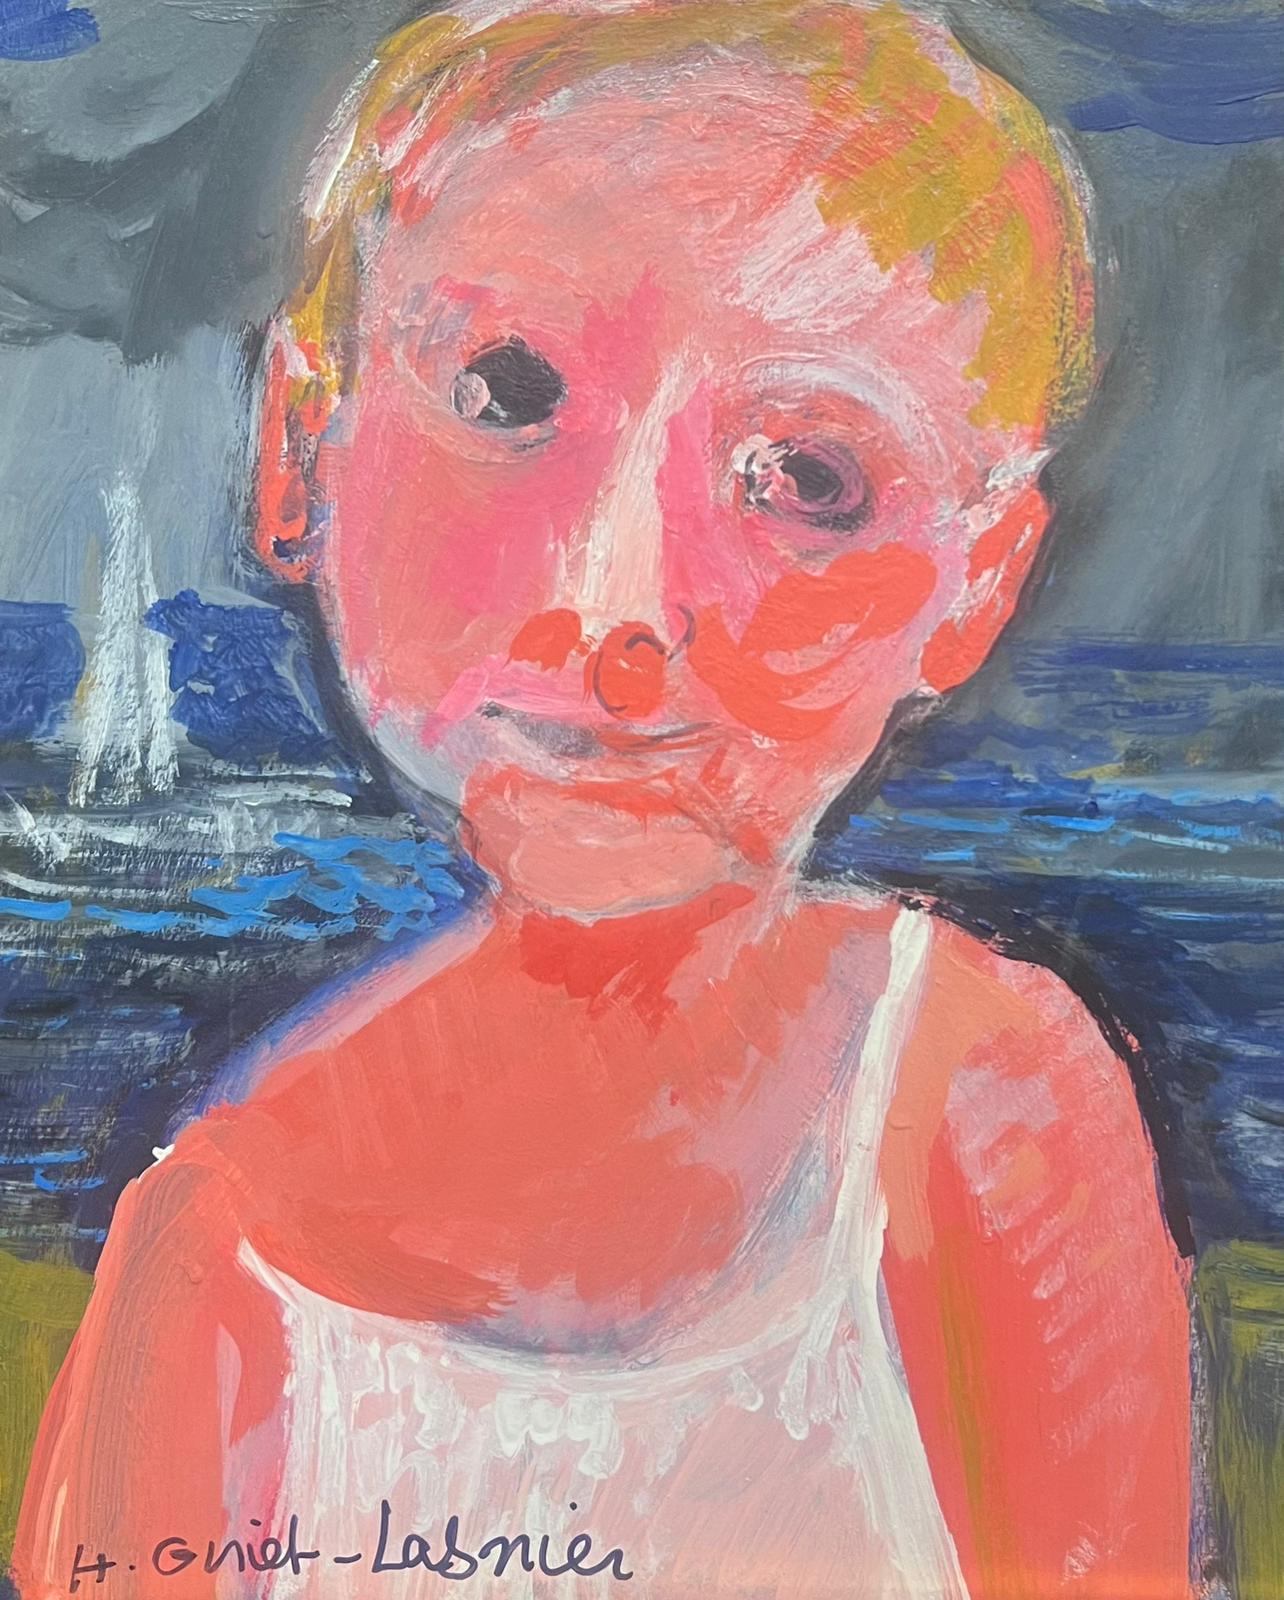 Portrait Painting Huguette Ginet-Lasnier  - Portrait d'enfant sur plage avec mer et bateau, signé par le moderniste français